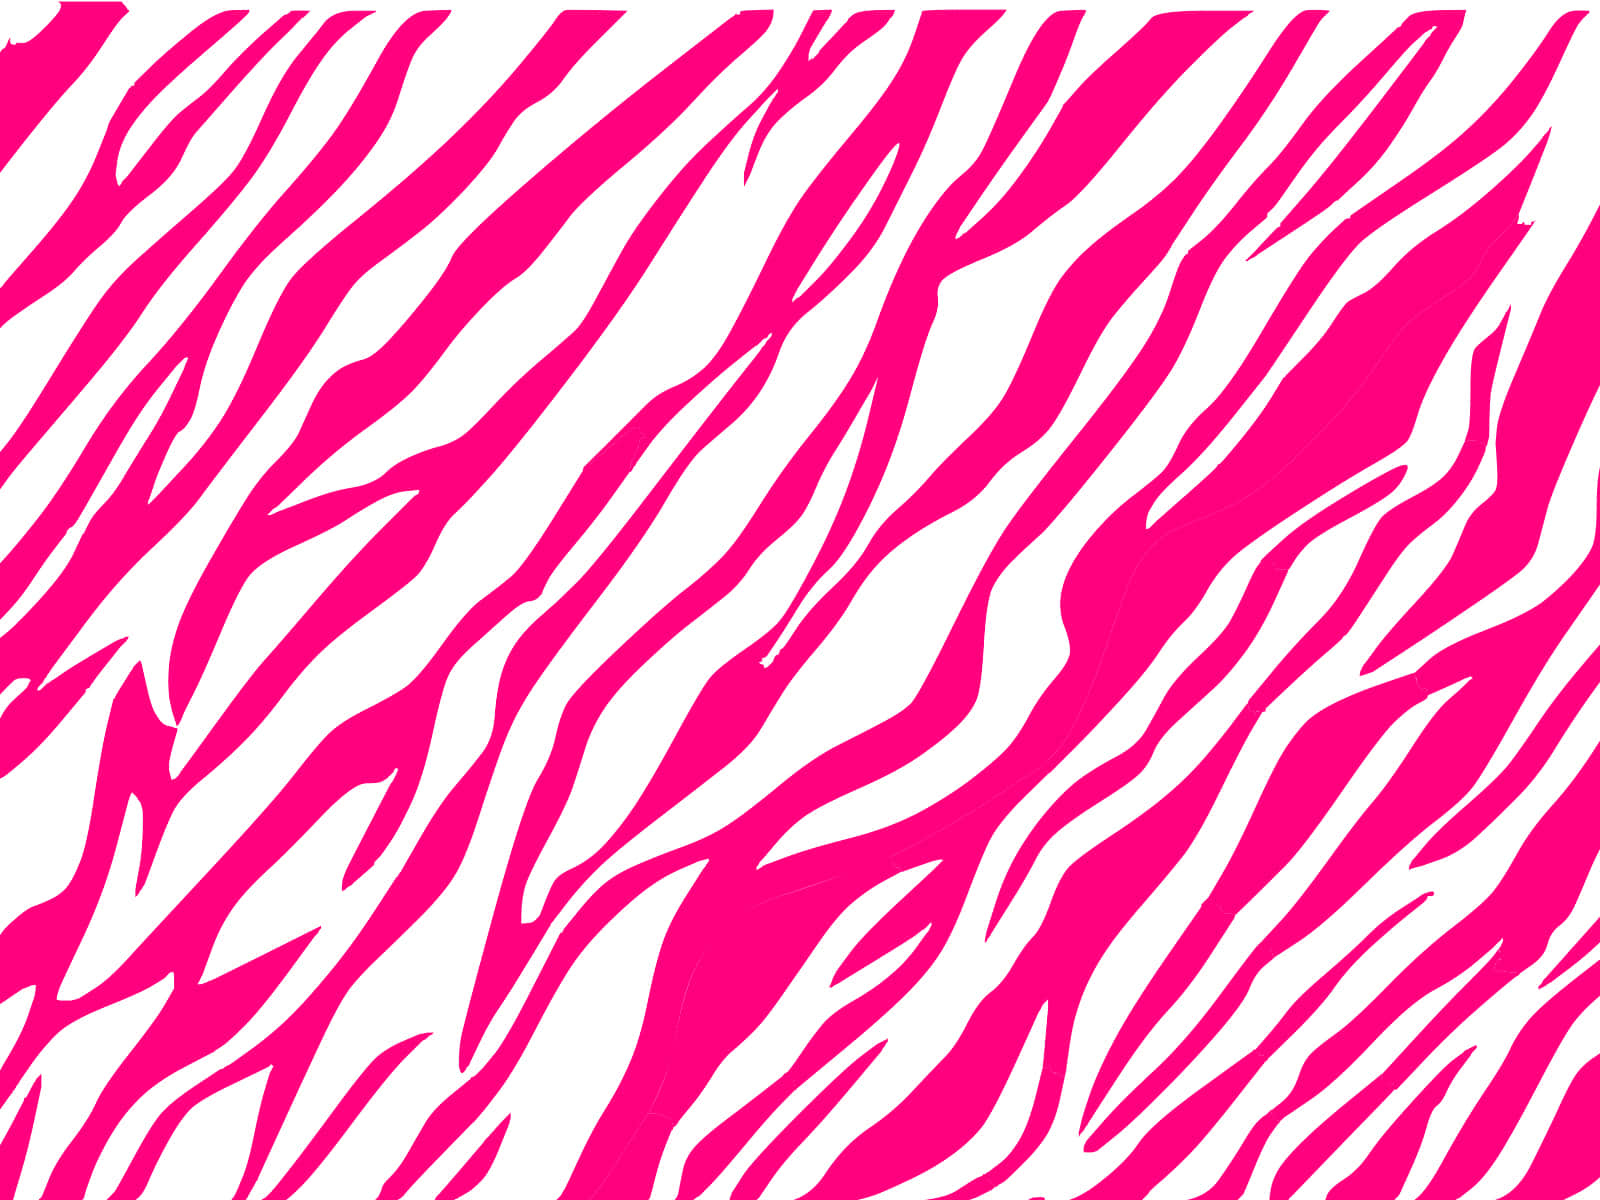 Einrosa-weißes Zebramuster Wallpaper